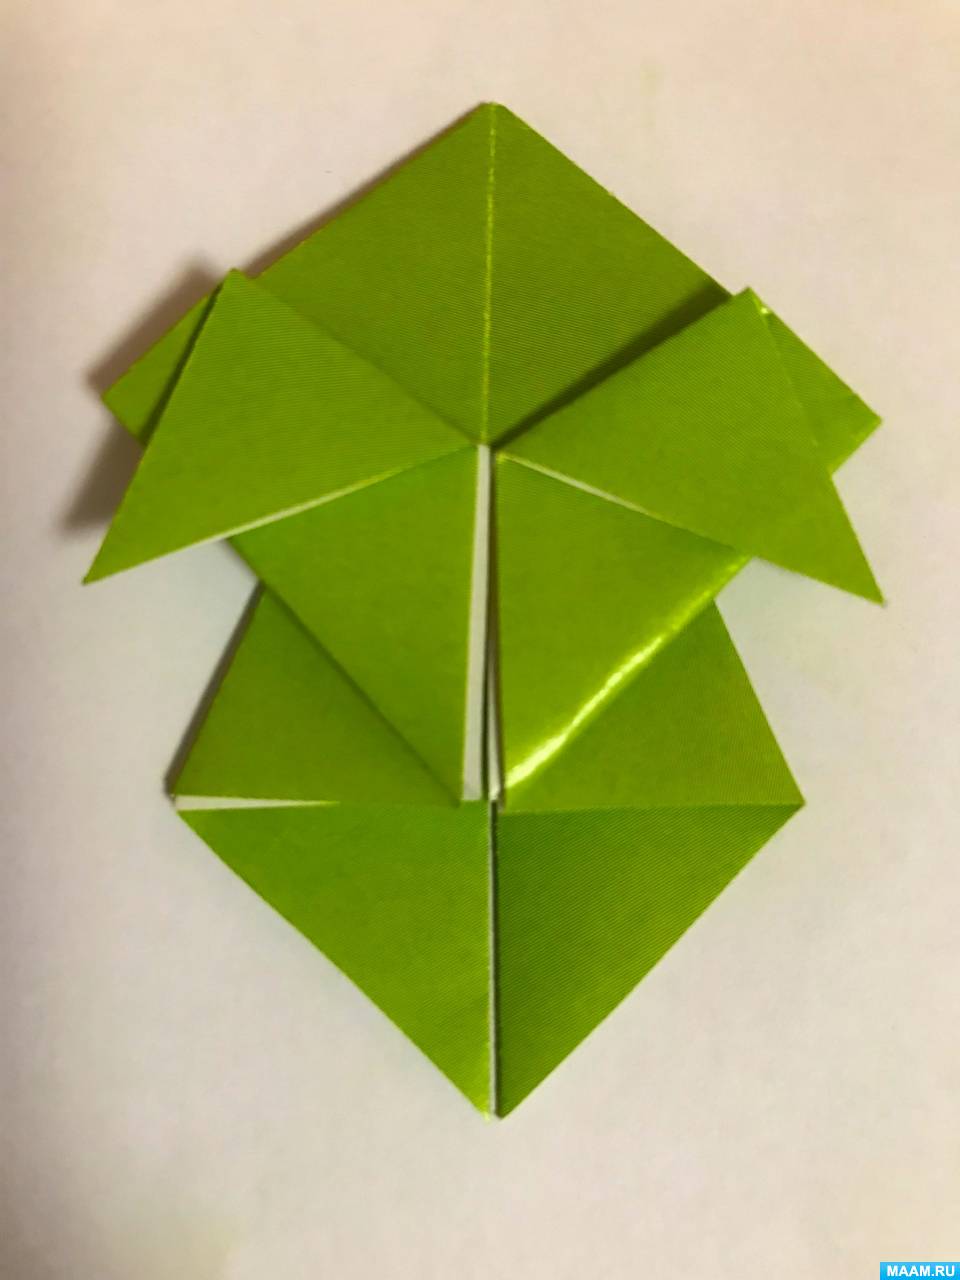 Фото №6 Публикация Мастер класс по оригами Петрушка для старших дошкольников размещена в разделах Оригами для детей Поделки